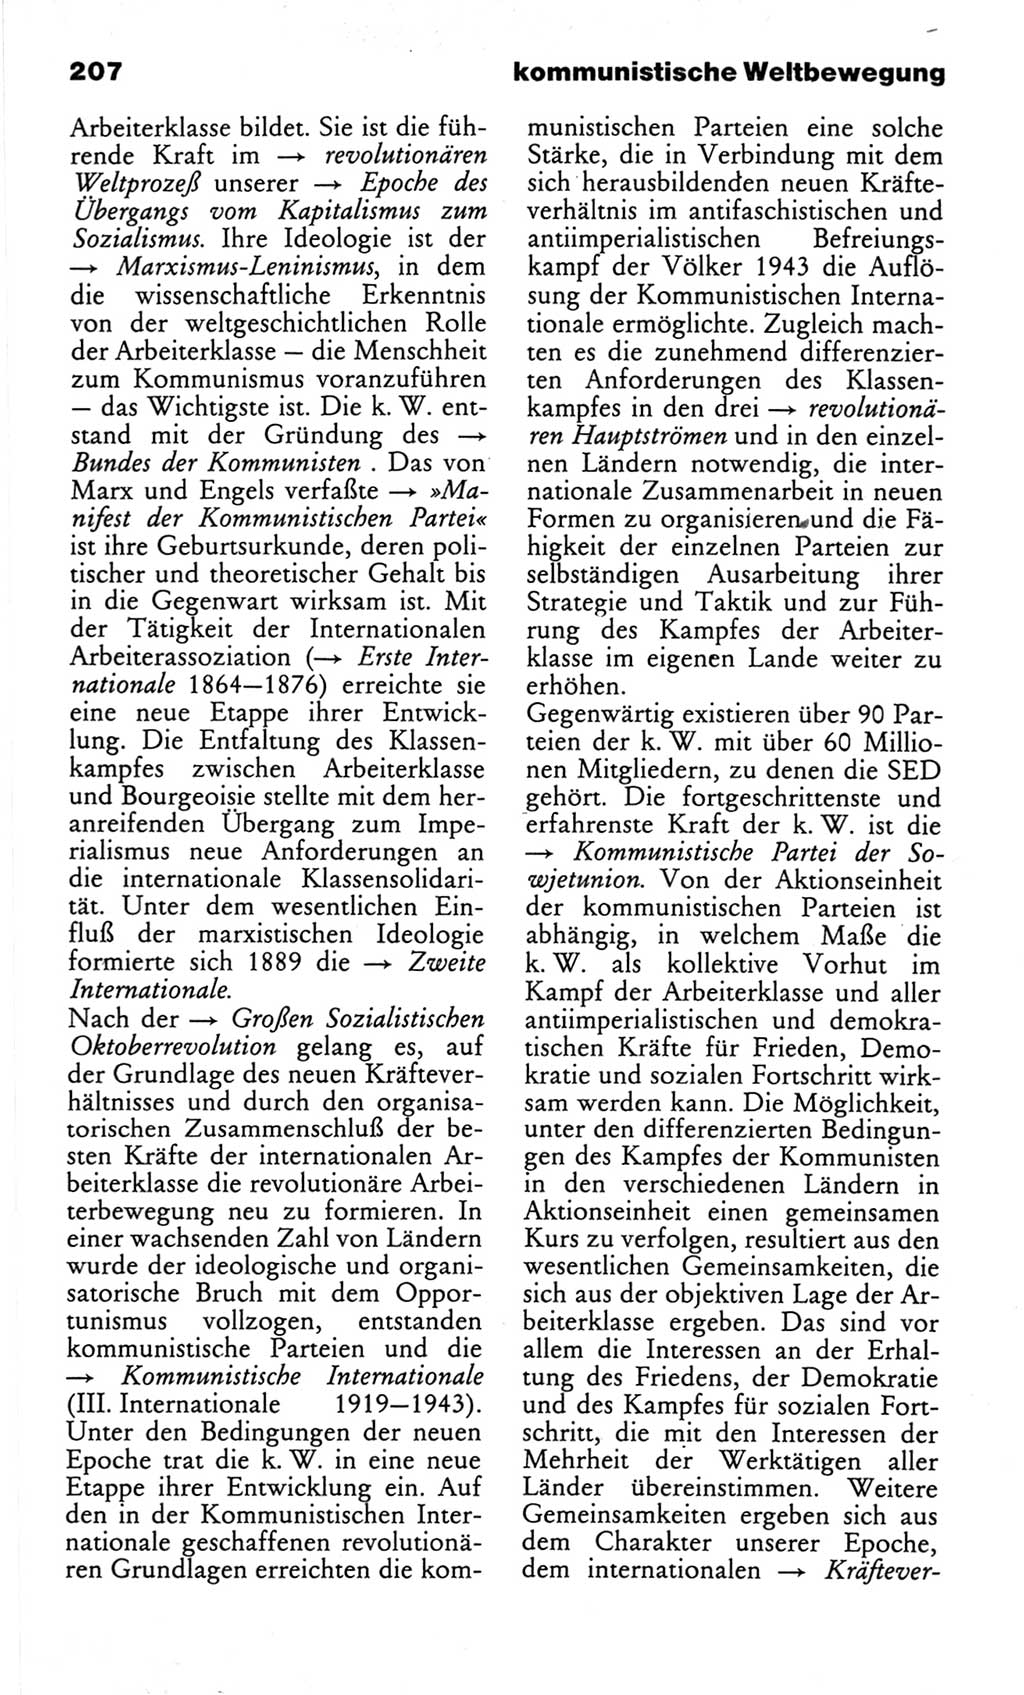 Wörterbuch des wissenschaftlichen Kommunismus [Deutsche Demokratische Republik (DDR)] 1982, Seite 207 (Wb. wiss. Komm. DDR 1982, S. 207)